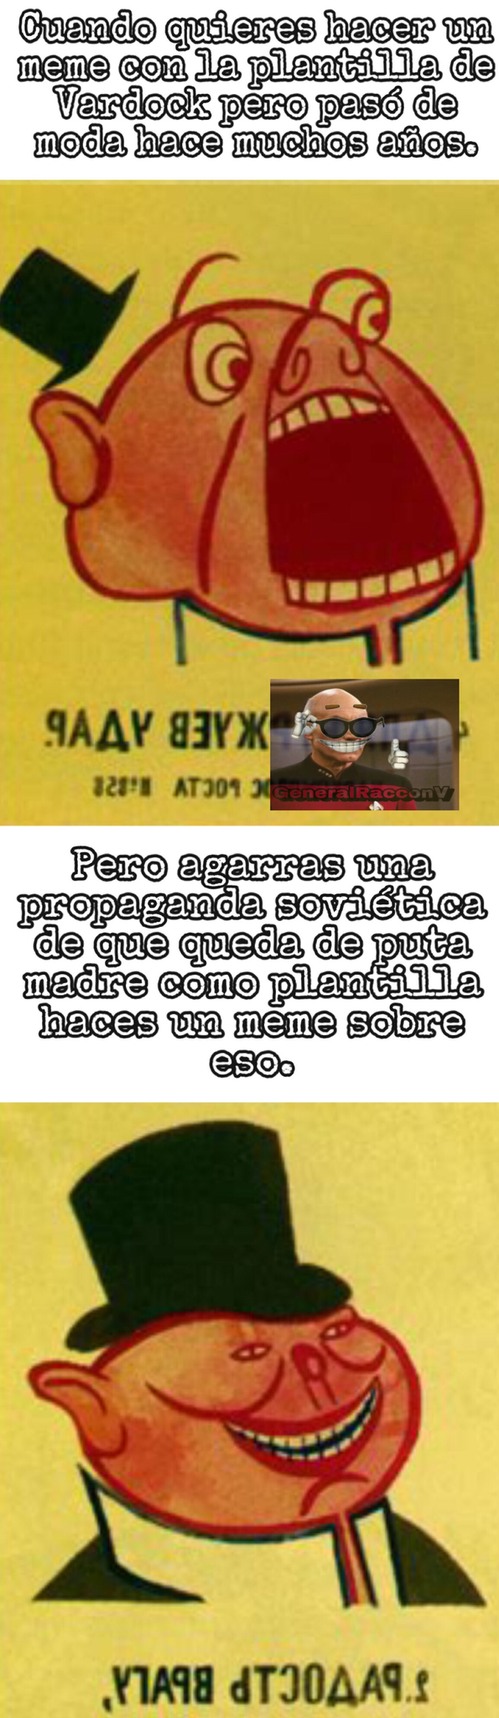 Propaganda Buenarda - meme